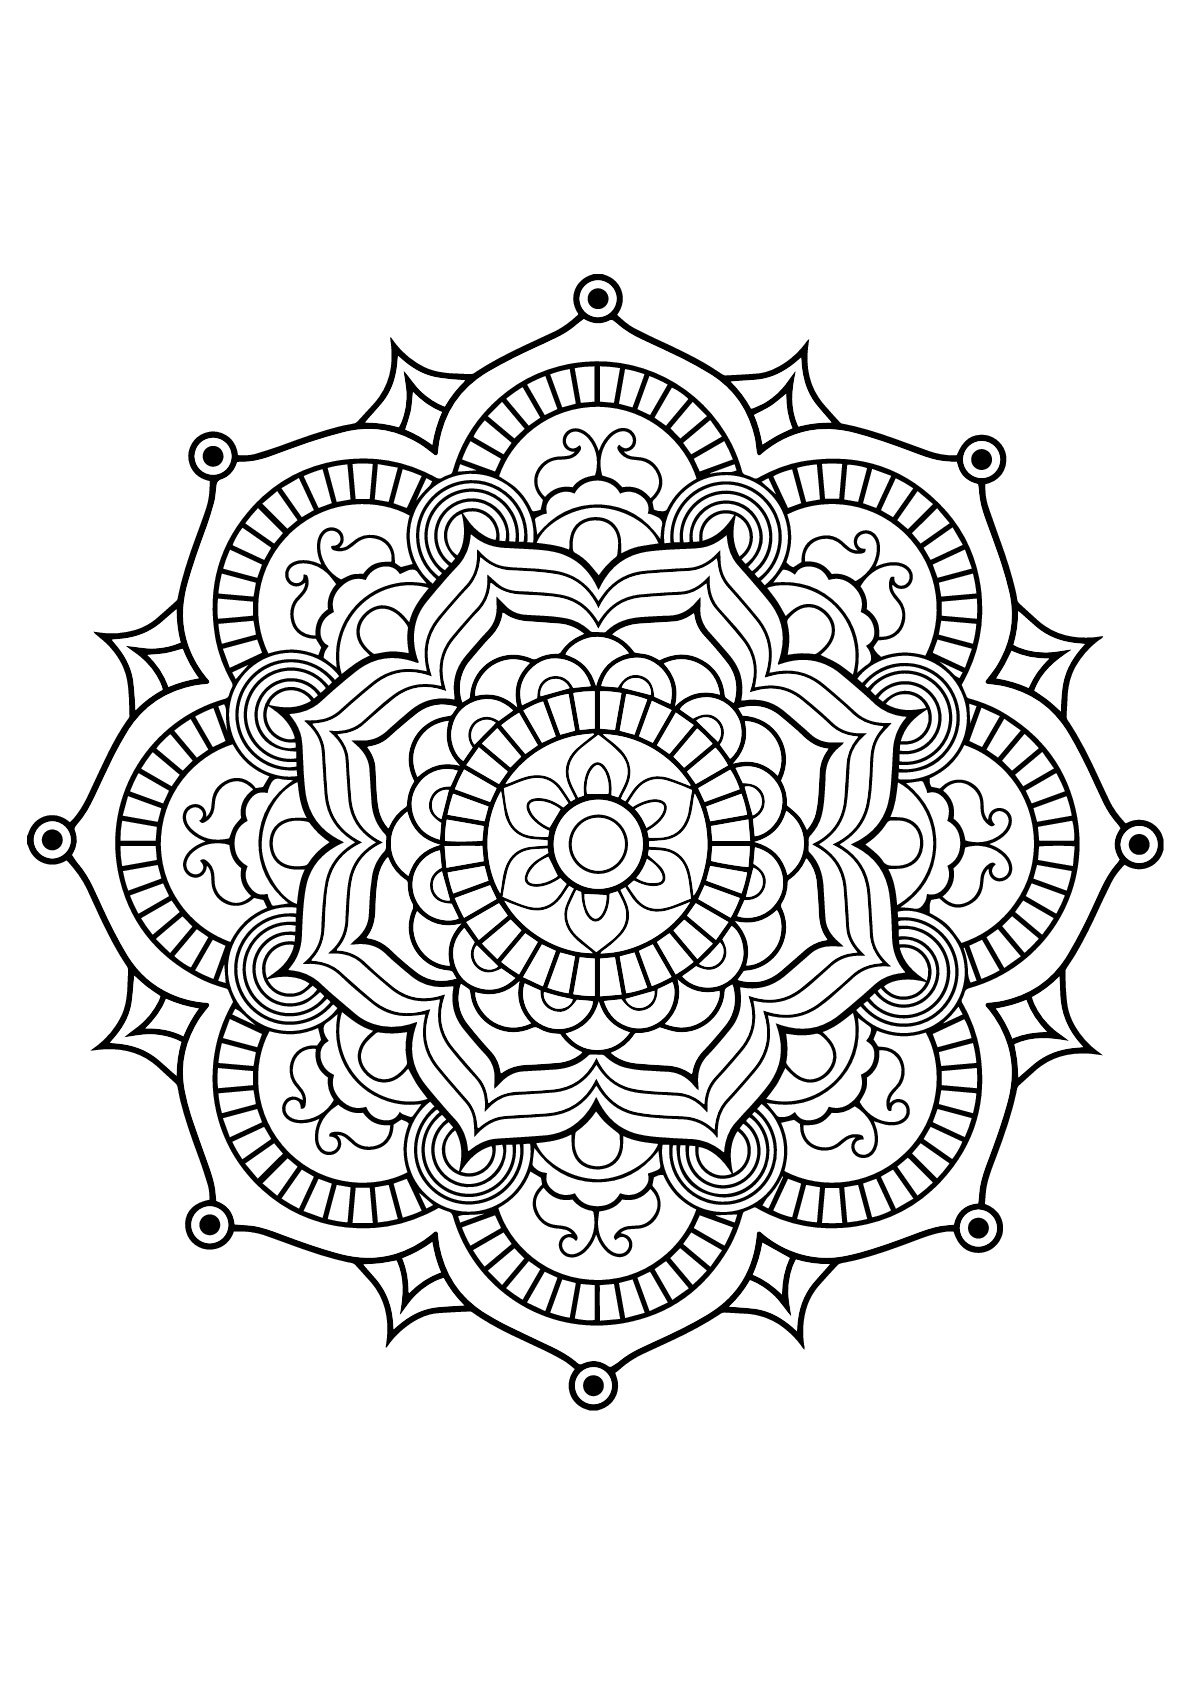 Mandala Complexe Livre Gratuit 8 - Coloriage Mandalas - Coloriages Pour dedans Dessin À Colorier Mandala 